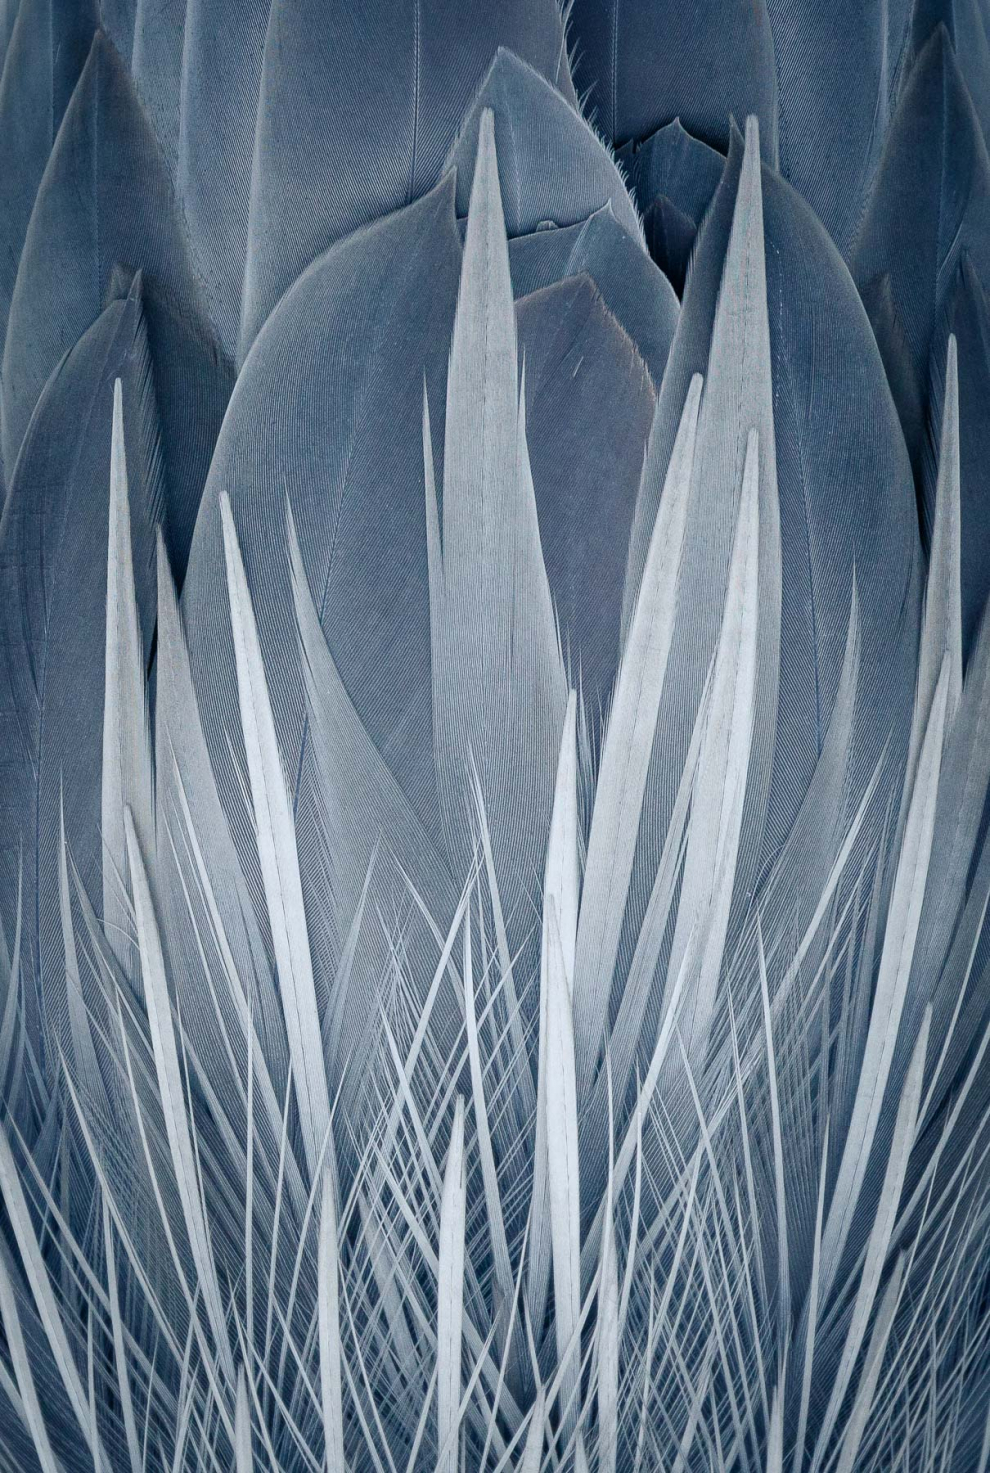 La garza azul es una de las especies más comunes en mi zona. Está bastante habituada a los humanos y suele quedarse quieta durante mucho tiempo. Ofrecen oportunidades para ser fotografiadas, por lo que es un error pasarlas por alto. Con esto en mente y en lugar de tomar otra foto de una garza azul simplemente de pie, decidí hacer un zoom y centrarme en las plumas de su espalda. Al revés, las plumas parecen una intrincada ilustración de fuego, o tal vez algún tipo de flor.